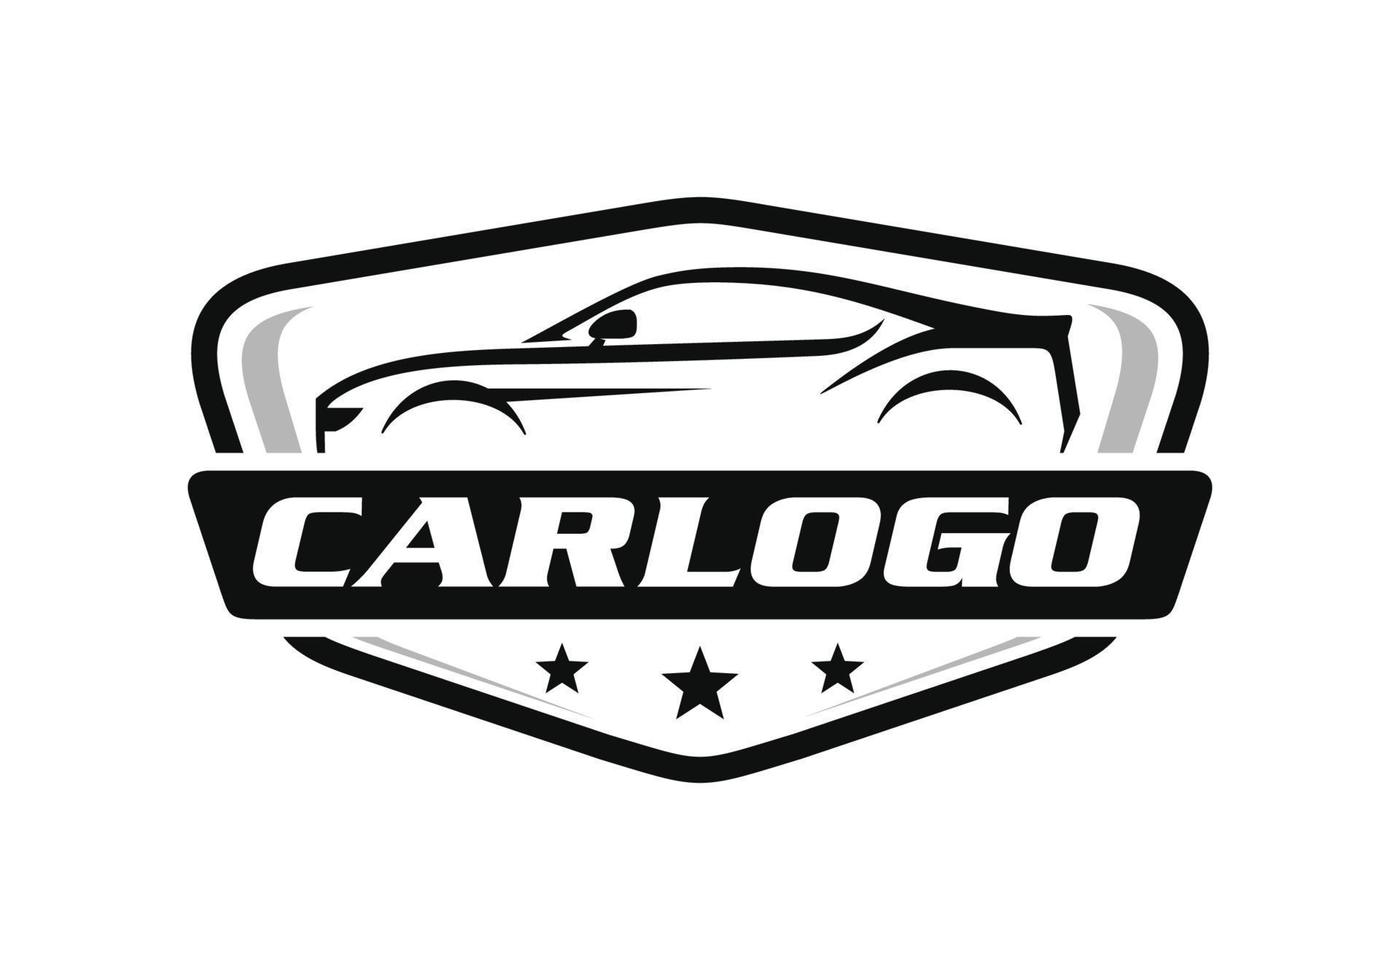 vector de diseño de logotipo automotriz de coche